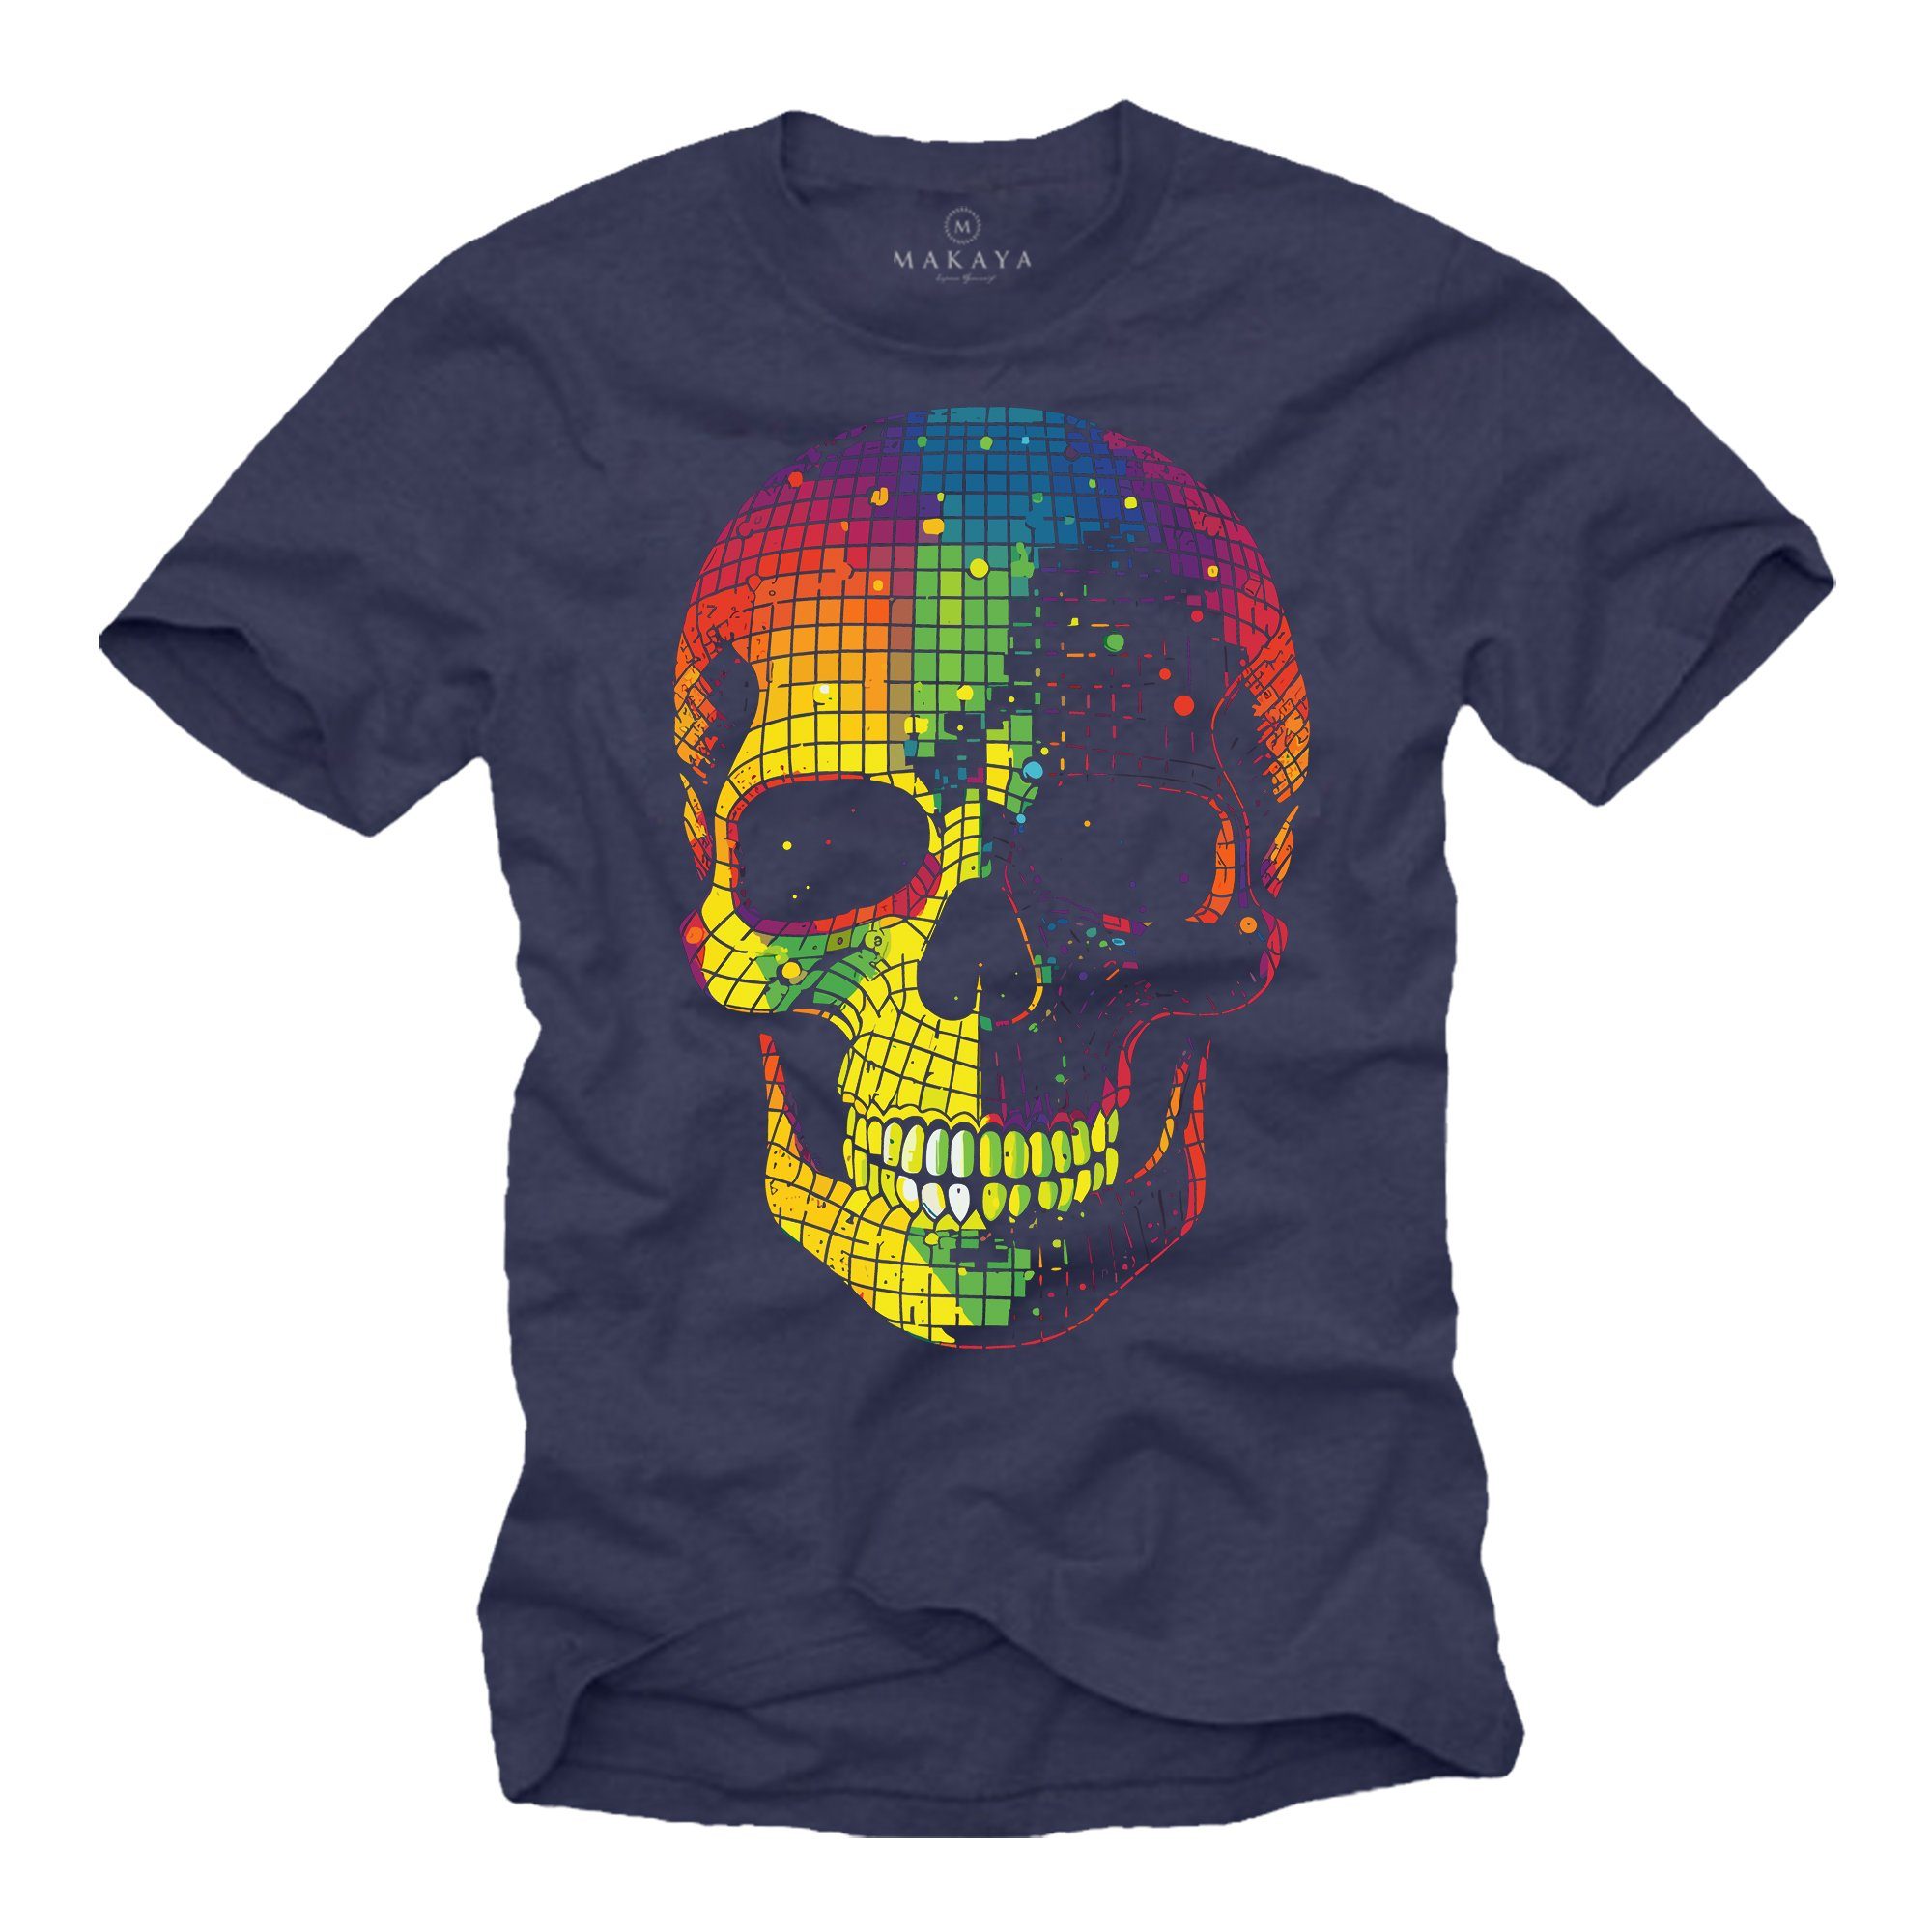 MAKAYA Print-Shirt Herren Disco Skull Totenkopf Jungen Jungs Teenager Party Motiv Gothic, Nerd Blau